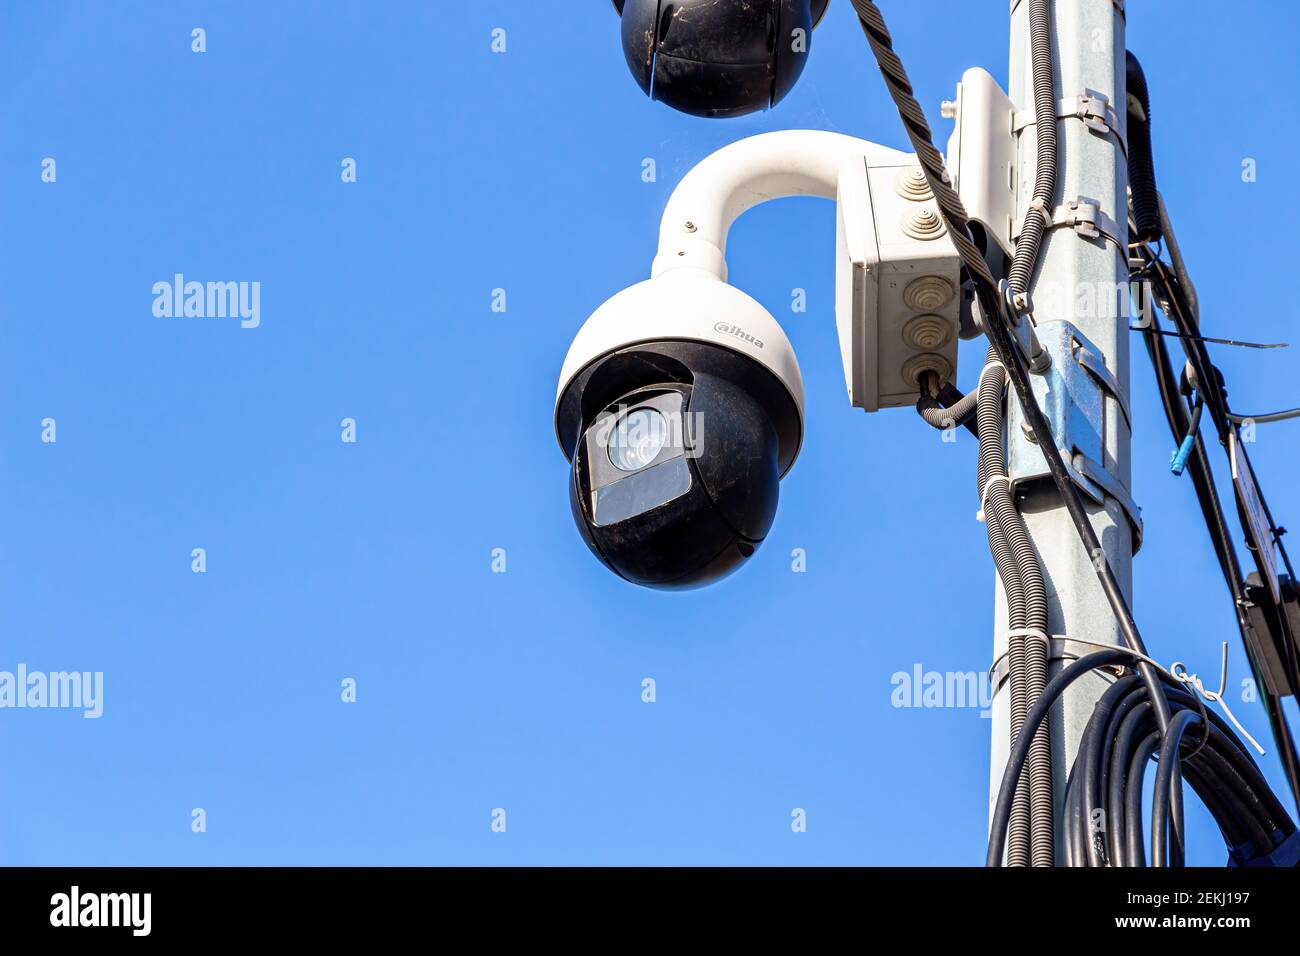 360 Grados De Cámaras De Vigilancia En Un Poste, El Cielo Azul. Fotos,  retratos, imágenes y fotografía de archivo libres de derecho. Image 11143489